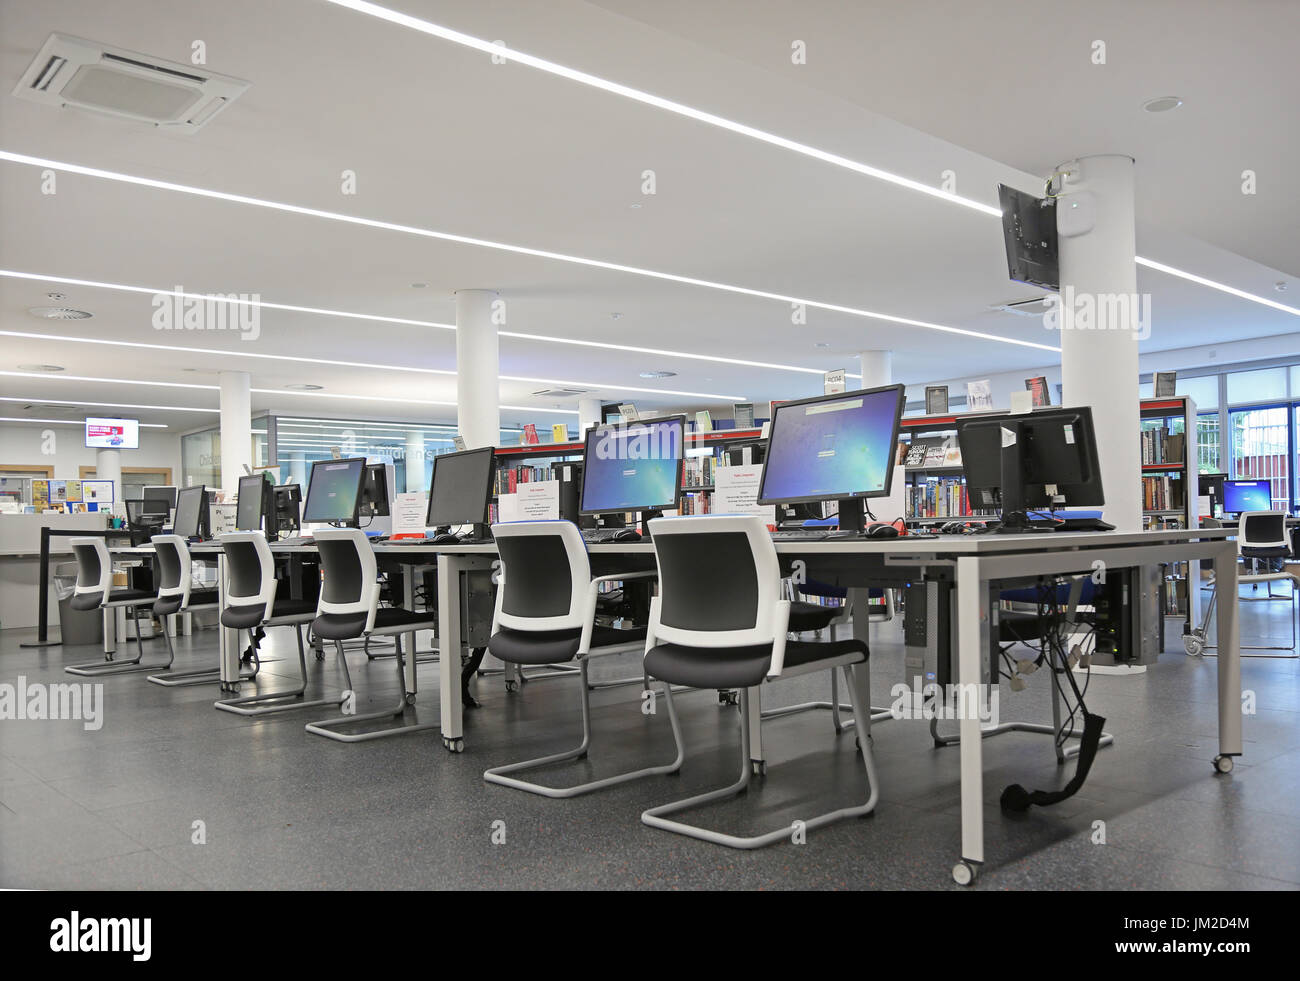 Computerbereich in der neu umgebauten Marcus Garvey Bibliothek in London Borough of Haringey, Vereinigtes Königreich. Zeigt traditionelle Bücherregale und neue Computer-Terminals. Stockfoto